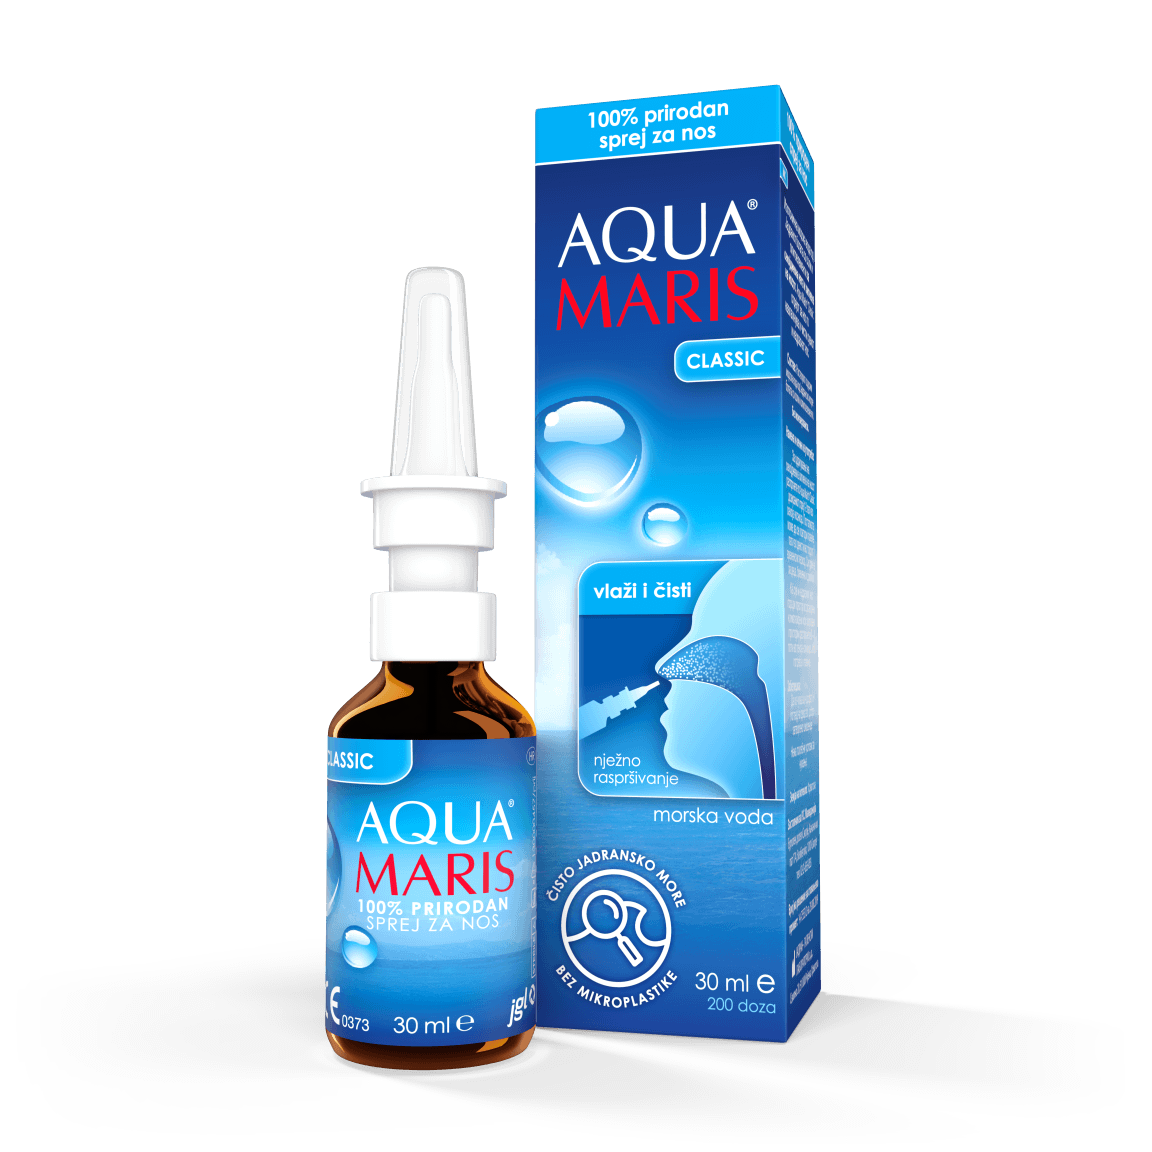 Aqua Maris Classic